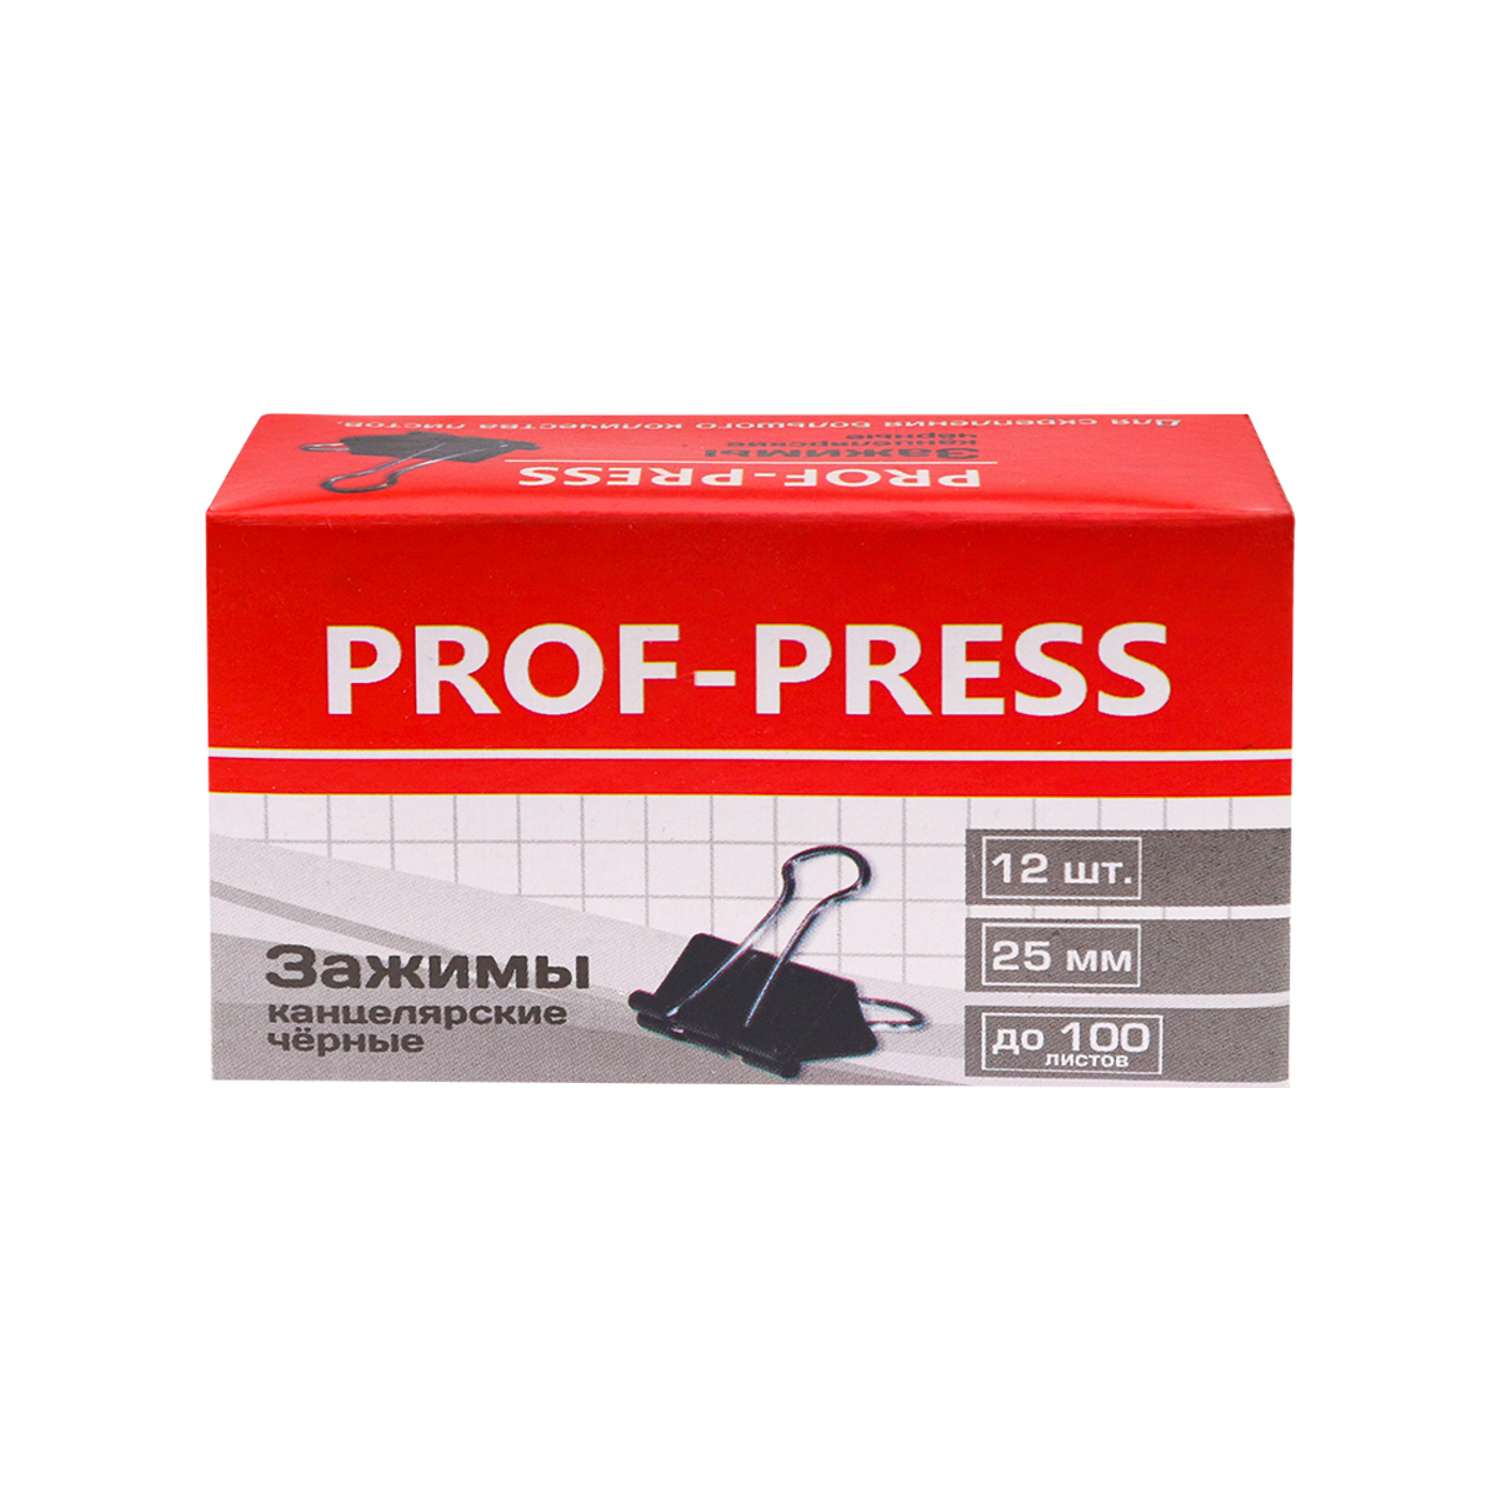 Зажим для бумаг Prof-Press черный 25мм набор 12шт коробке - фото 2